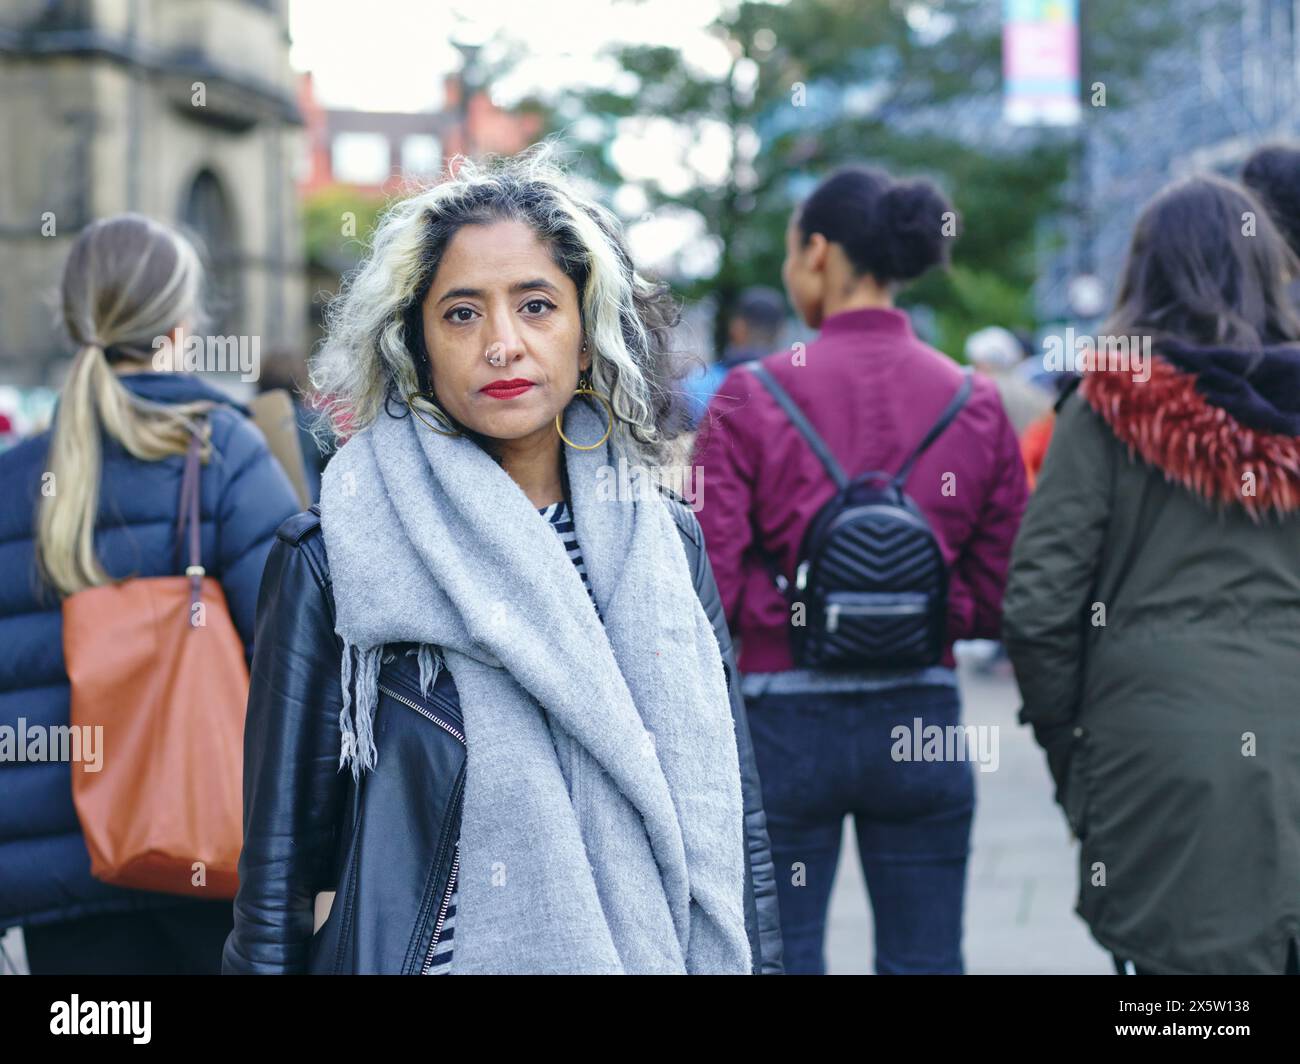 Activistes protestant dans la rue, portrait de femme Banque D'Images